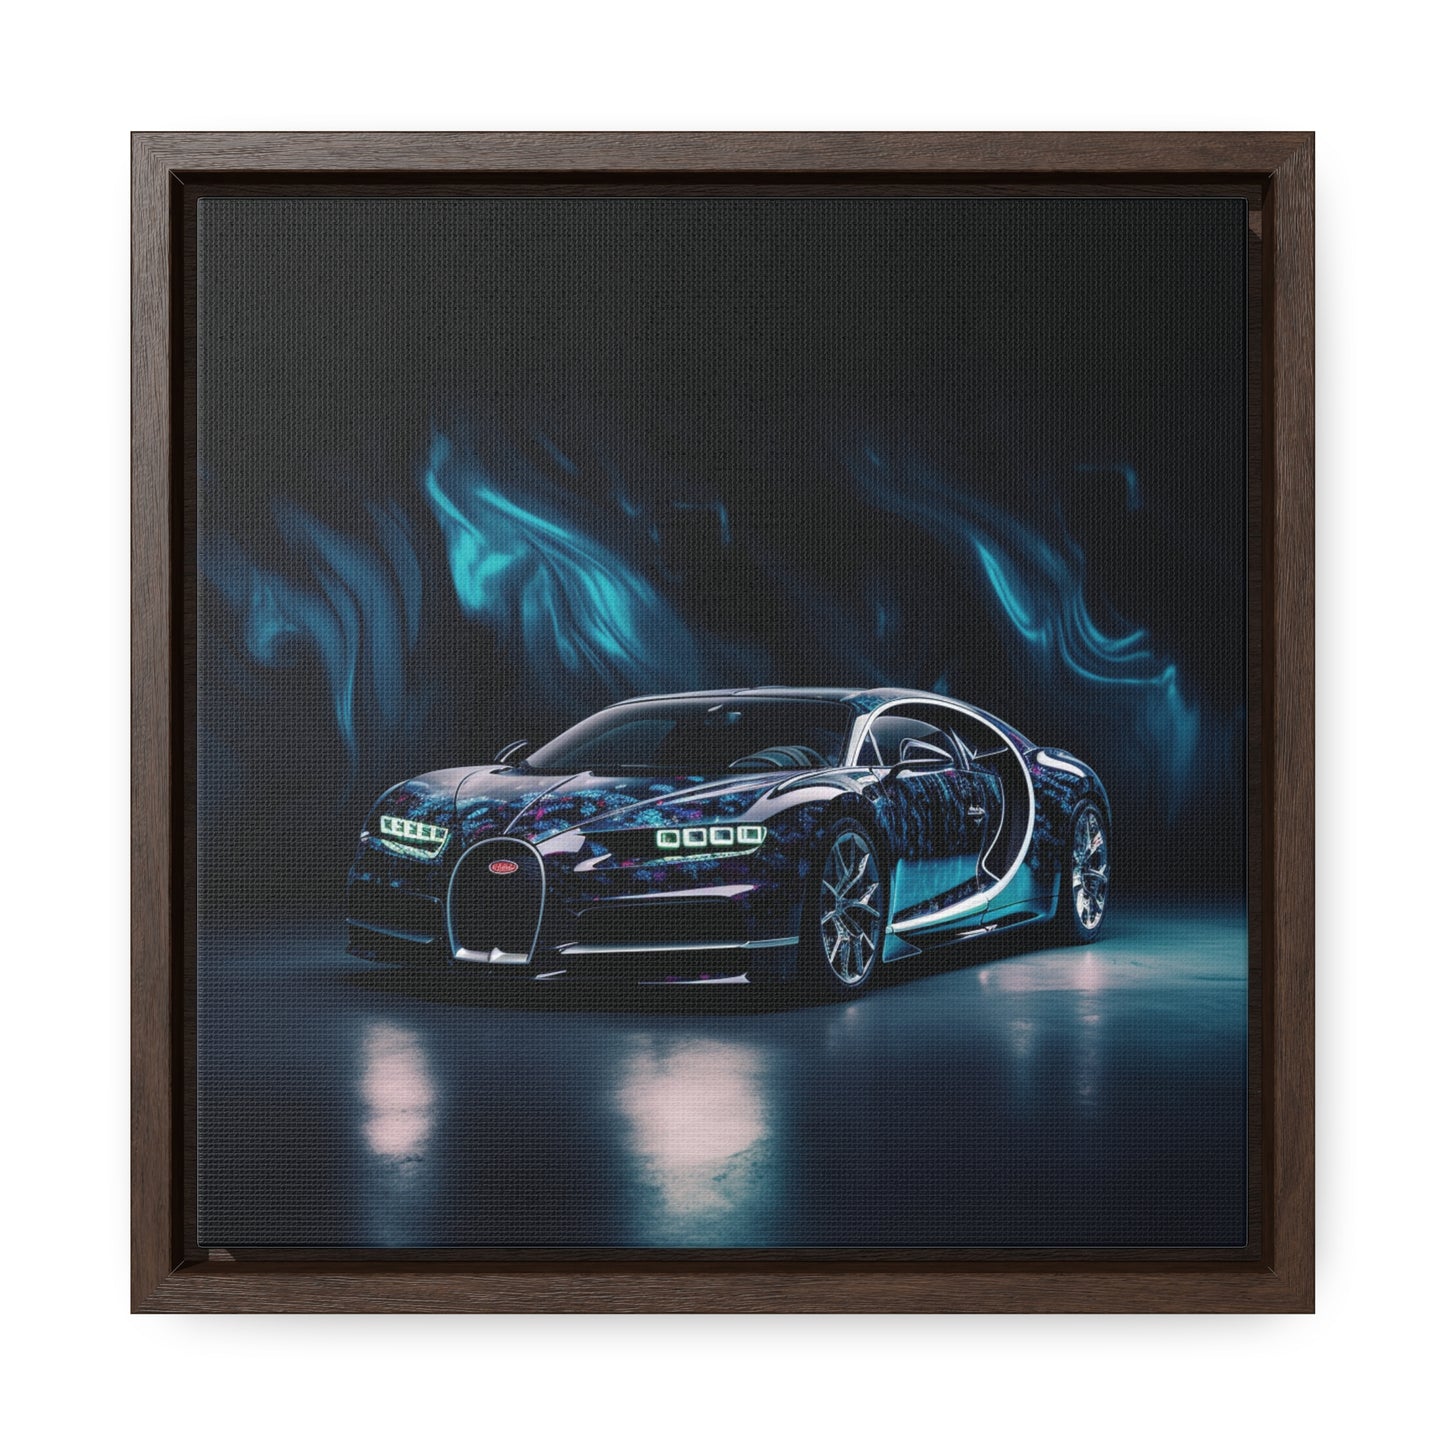 Gallery Canvas Wraps, Square Frame Hyper Bugatti 1